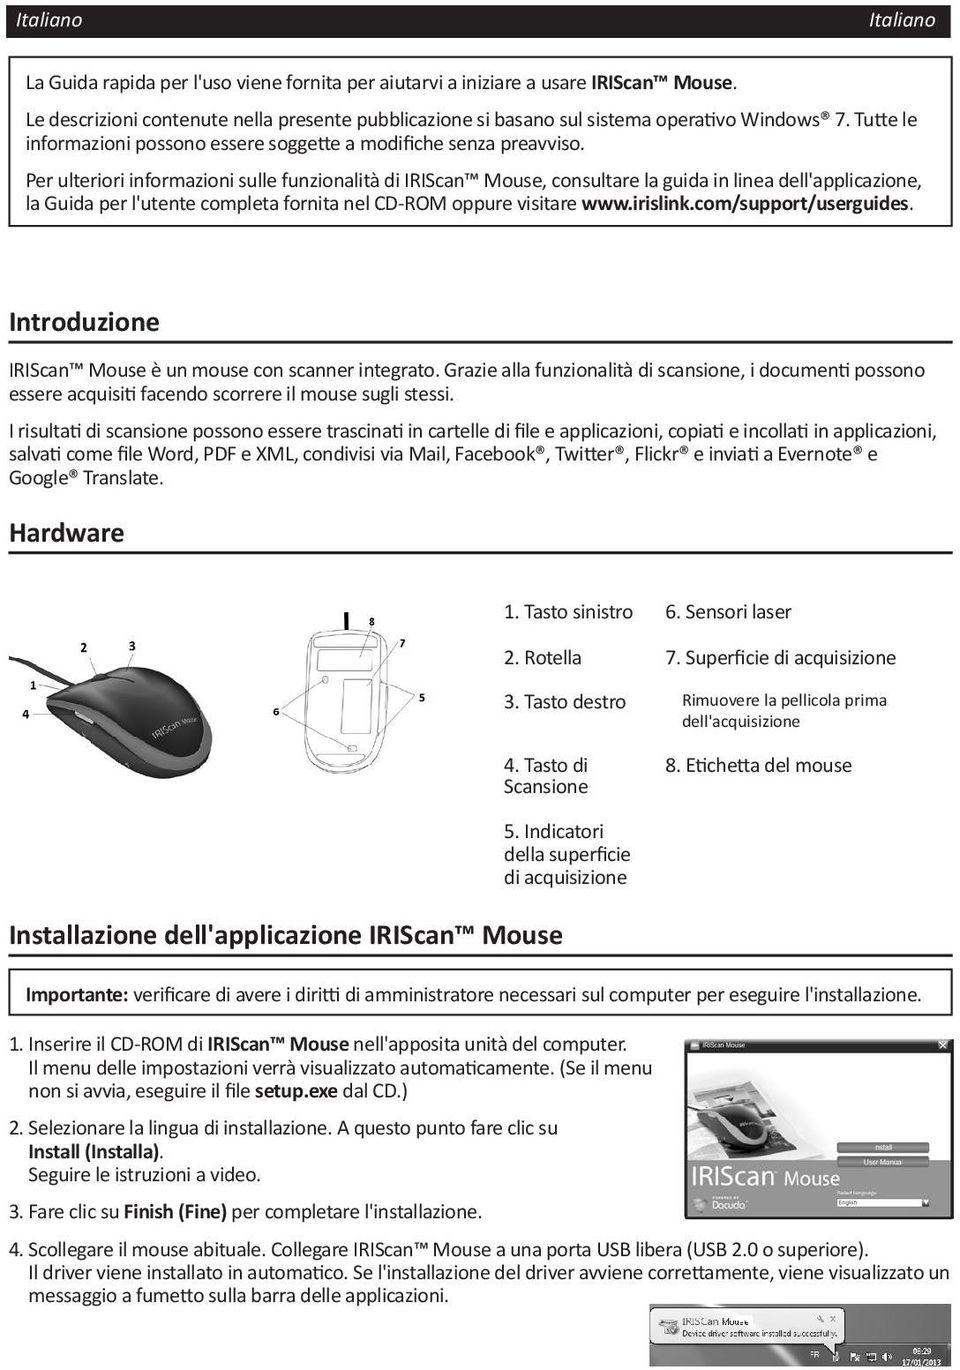 Per ulteriori informazioni sulle funzionalità di IRIScan Mouse, consultare la guida in linea dell'applicazione, la Guida per l'utente completa fornita nel CD-ROM oppure visitare www.irislink.